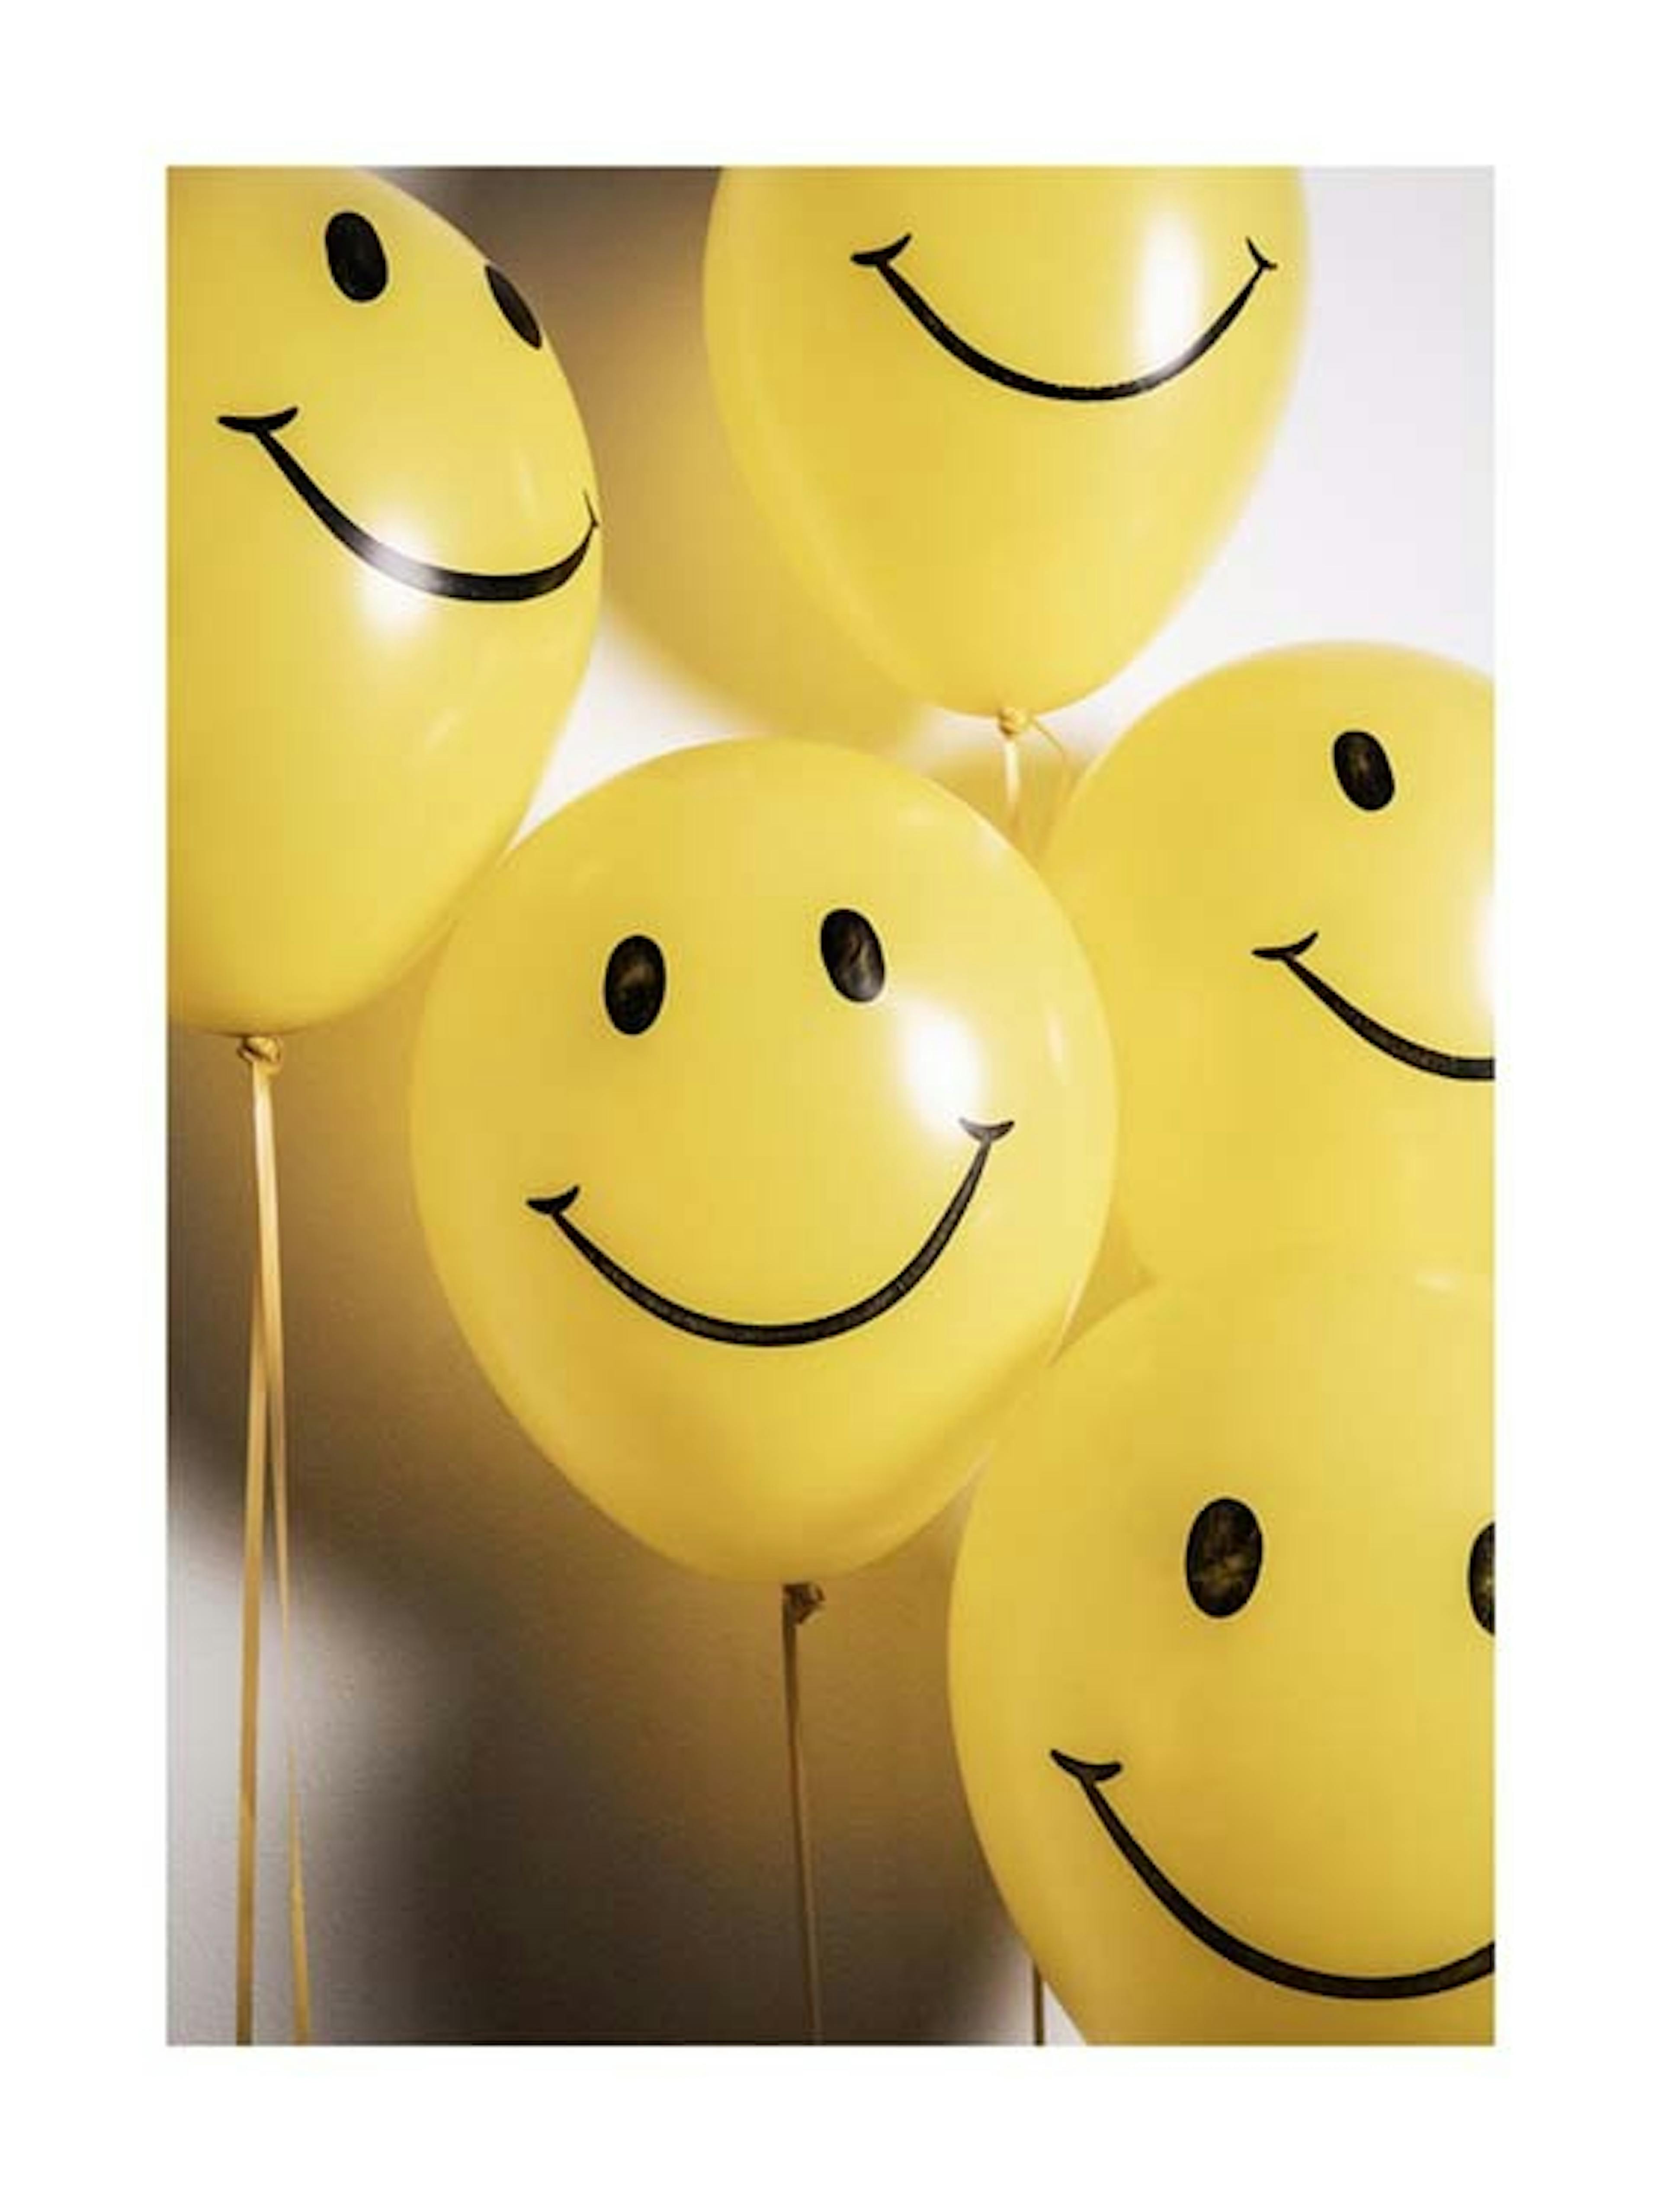 Smiley Face Balloons Poster 0